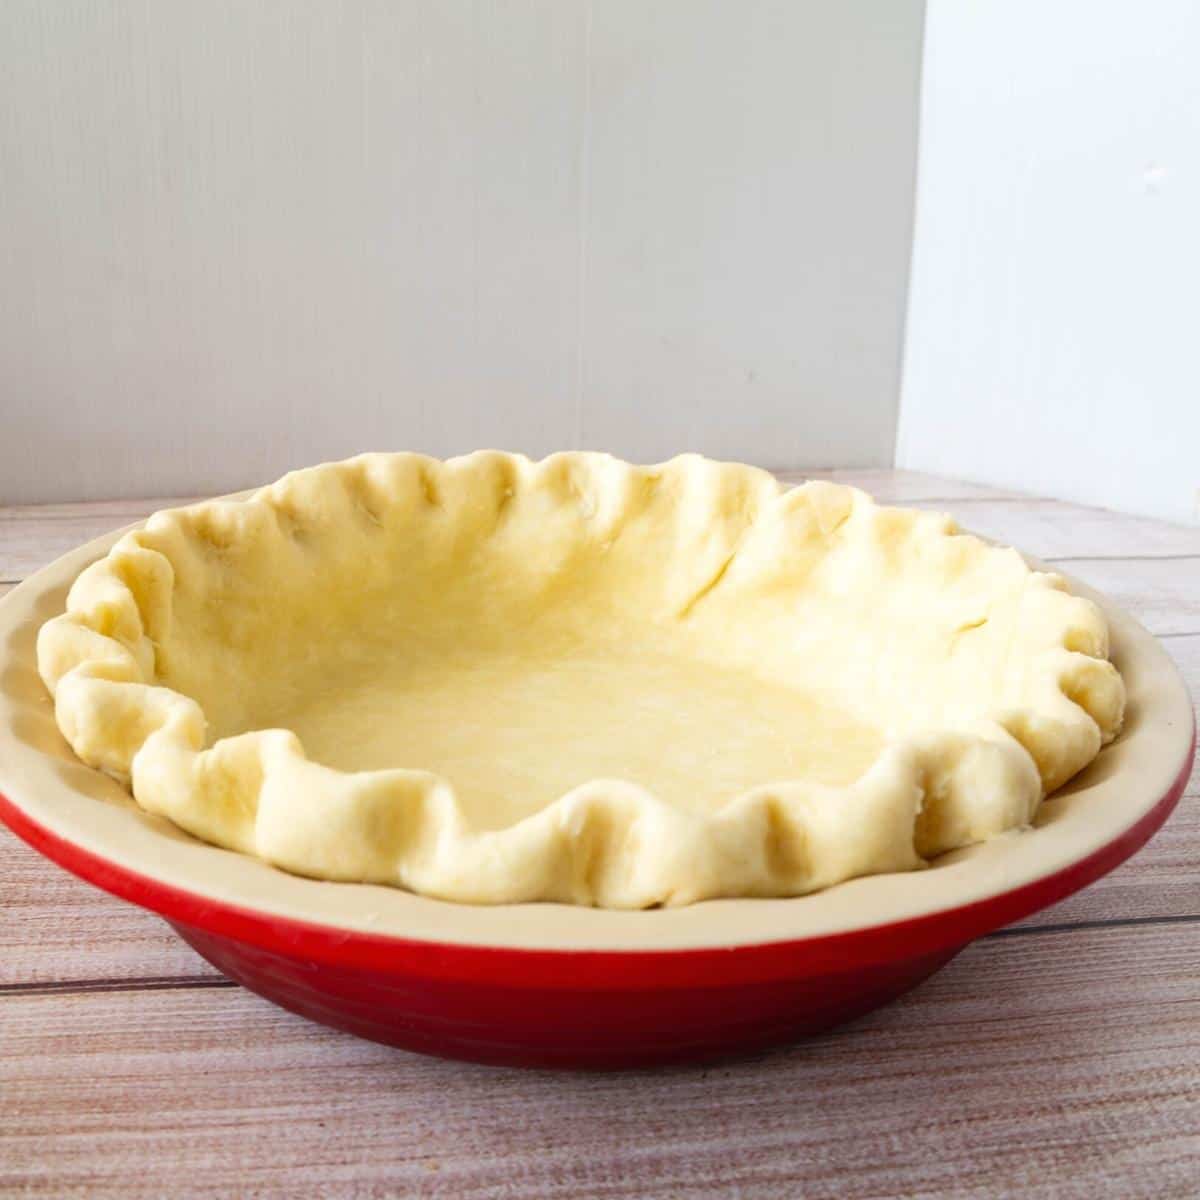 A pie crust in a pie pan.